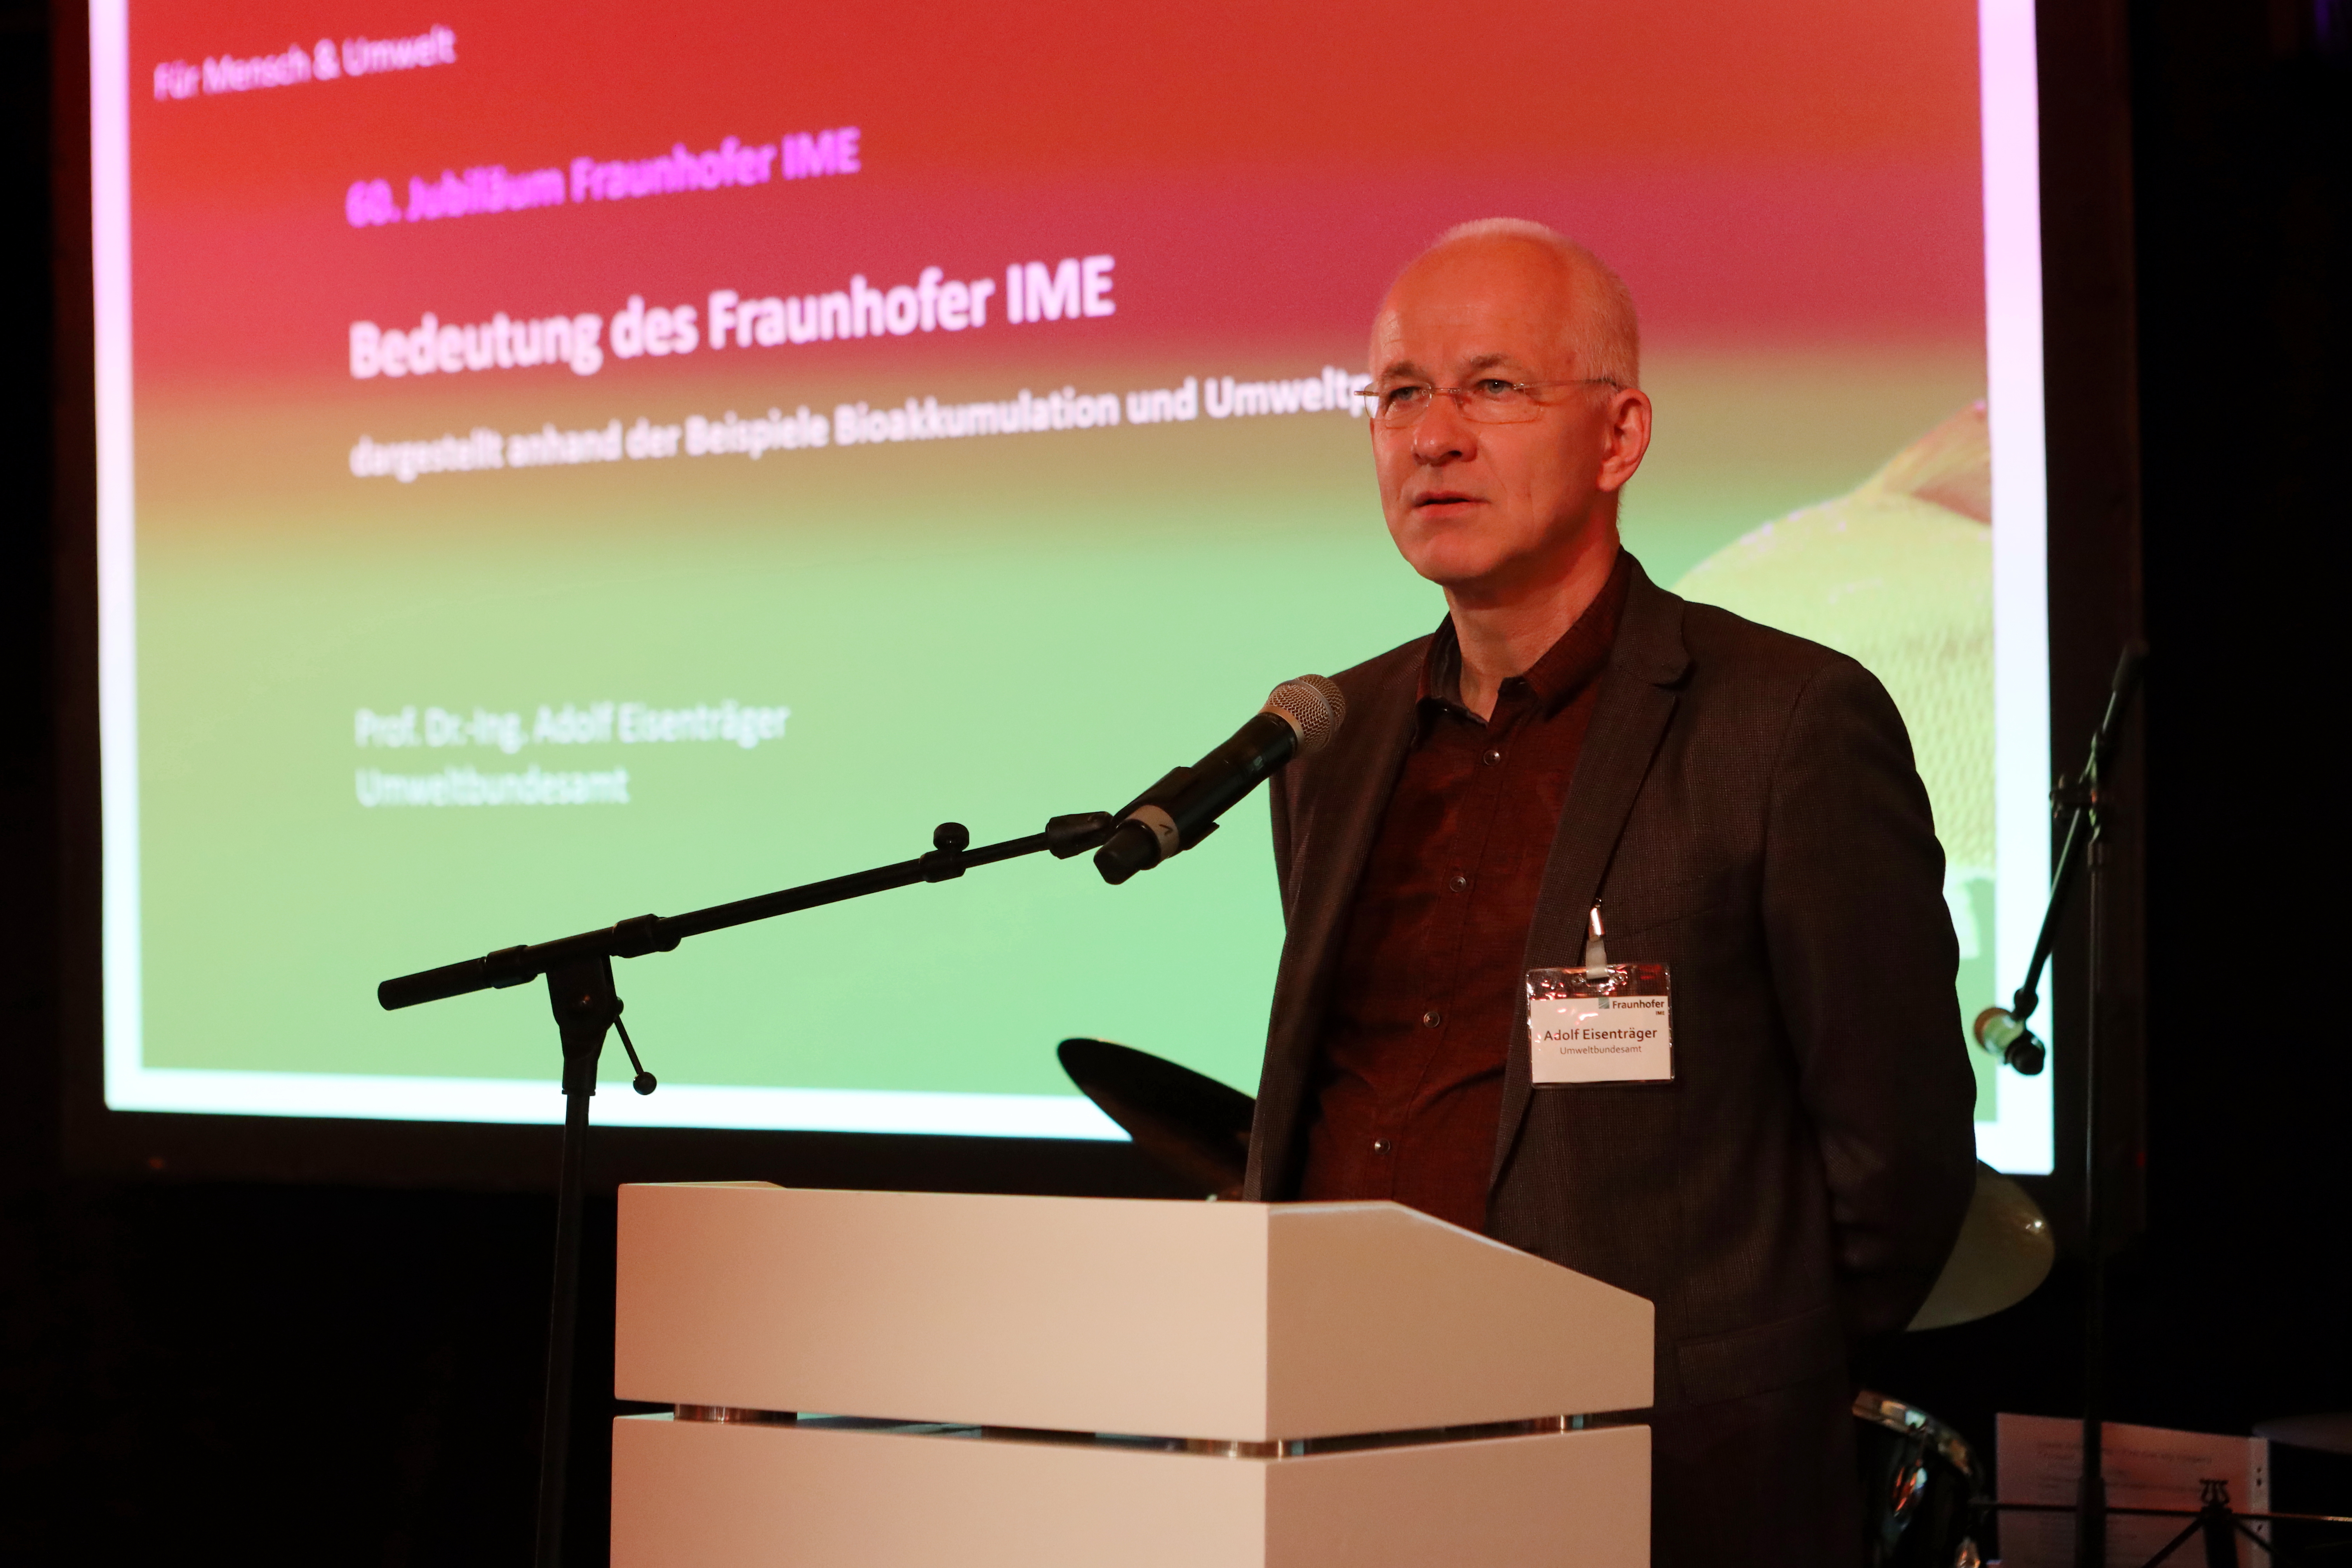 Vortrag zur Bedeutung des Fraunhofer IME von Professor Adolf Eisenträger, Umweltbundesamt